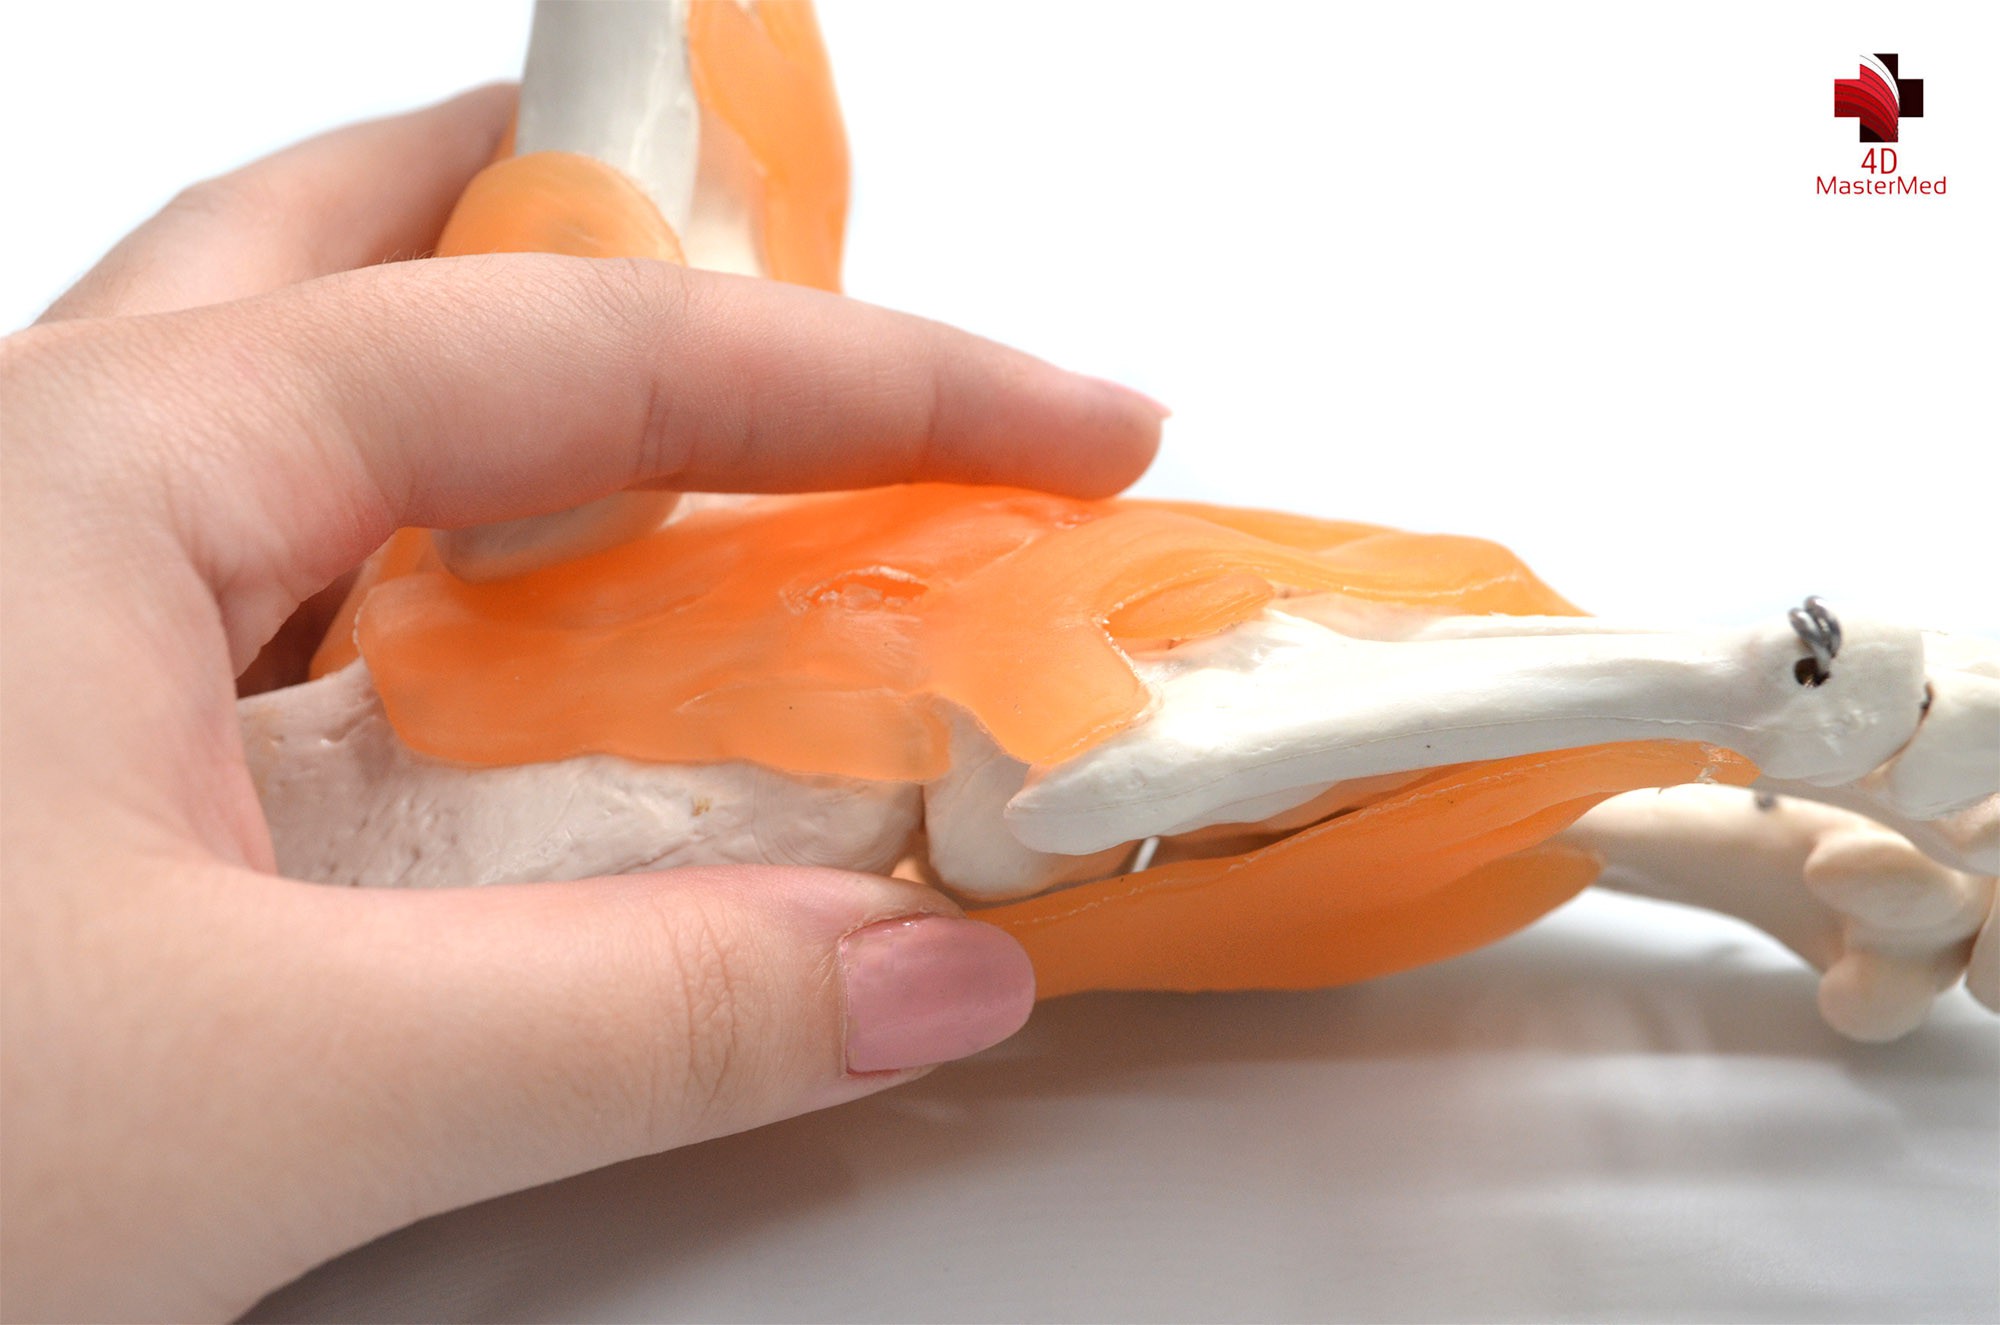 Anatomia da Articulação do Pé com ligamento  - 4D MasterMed